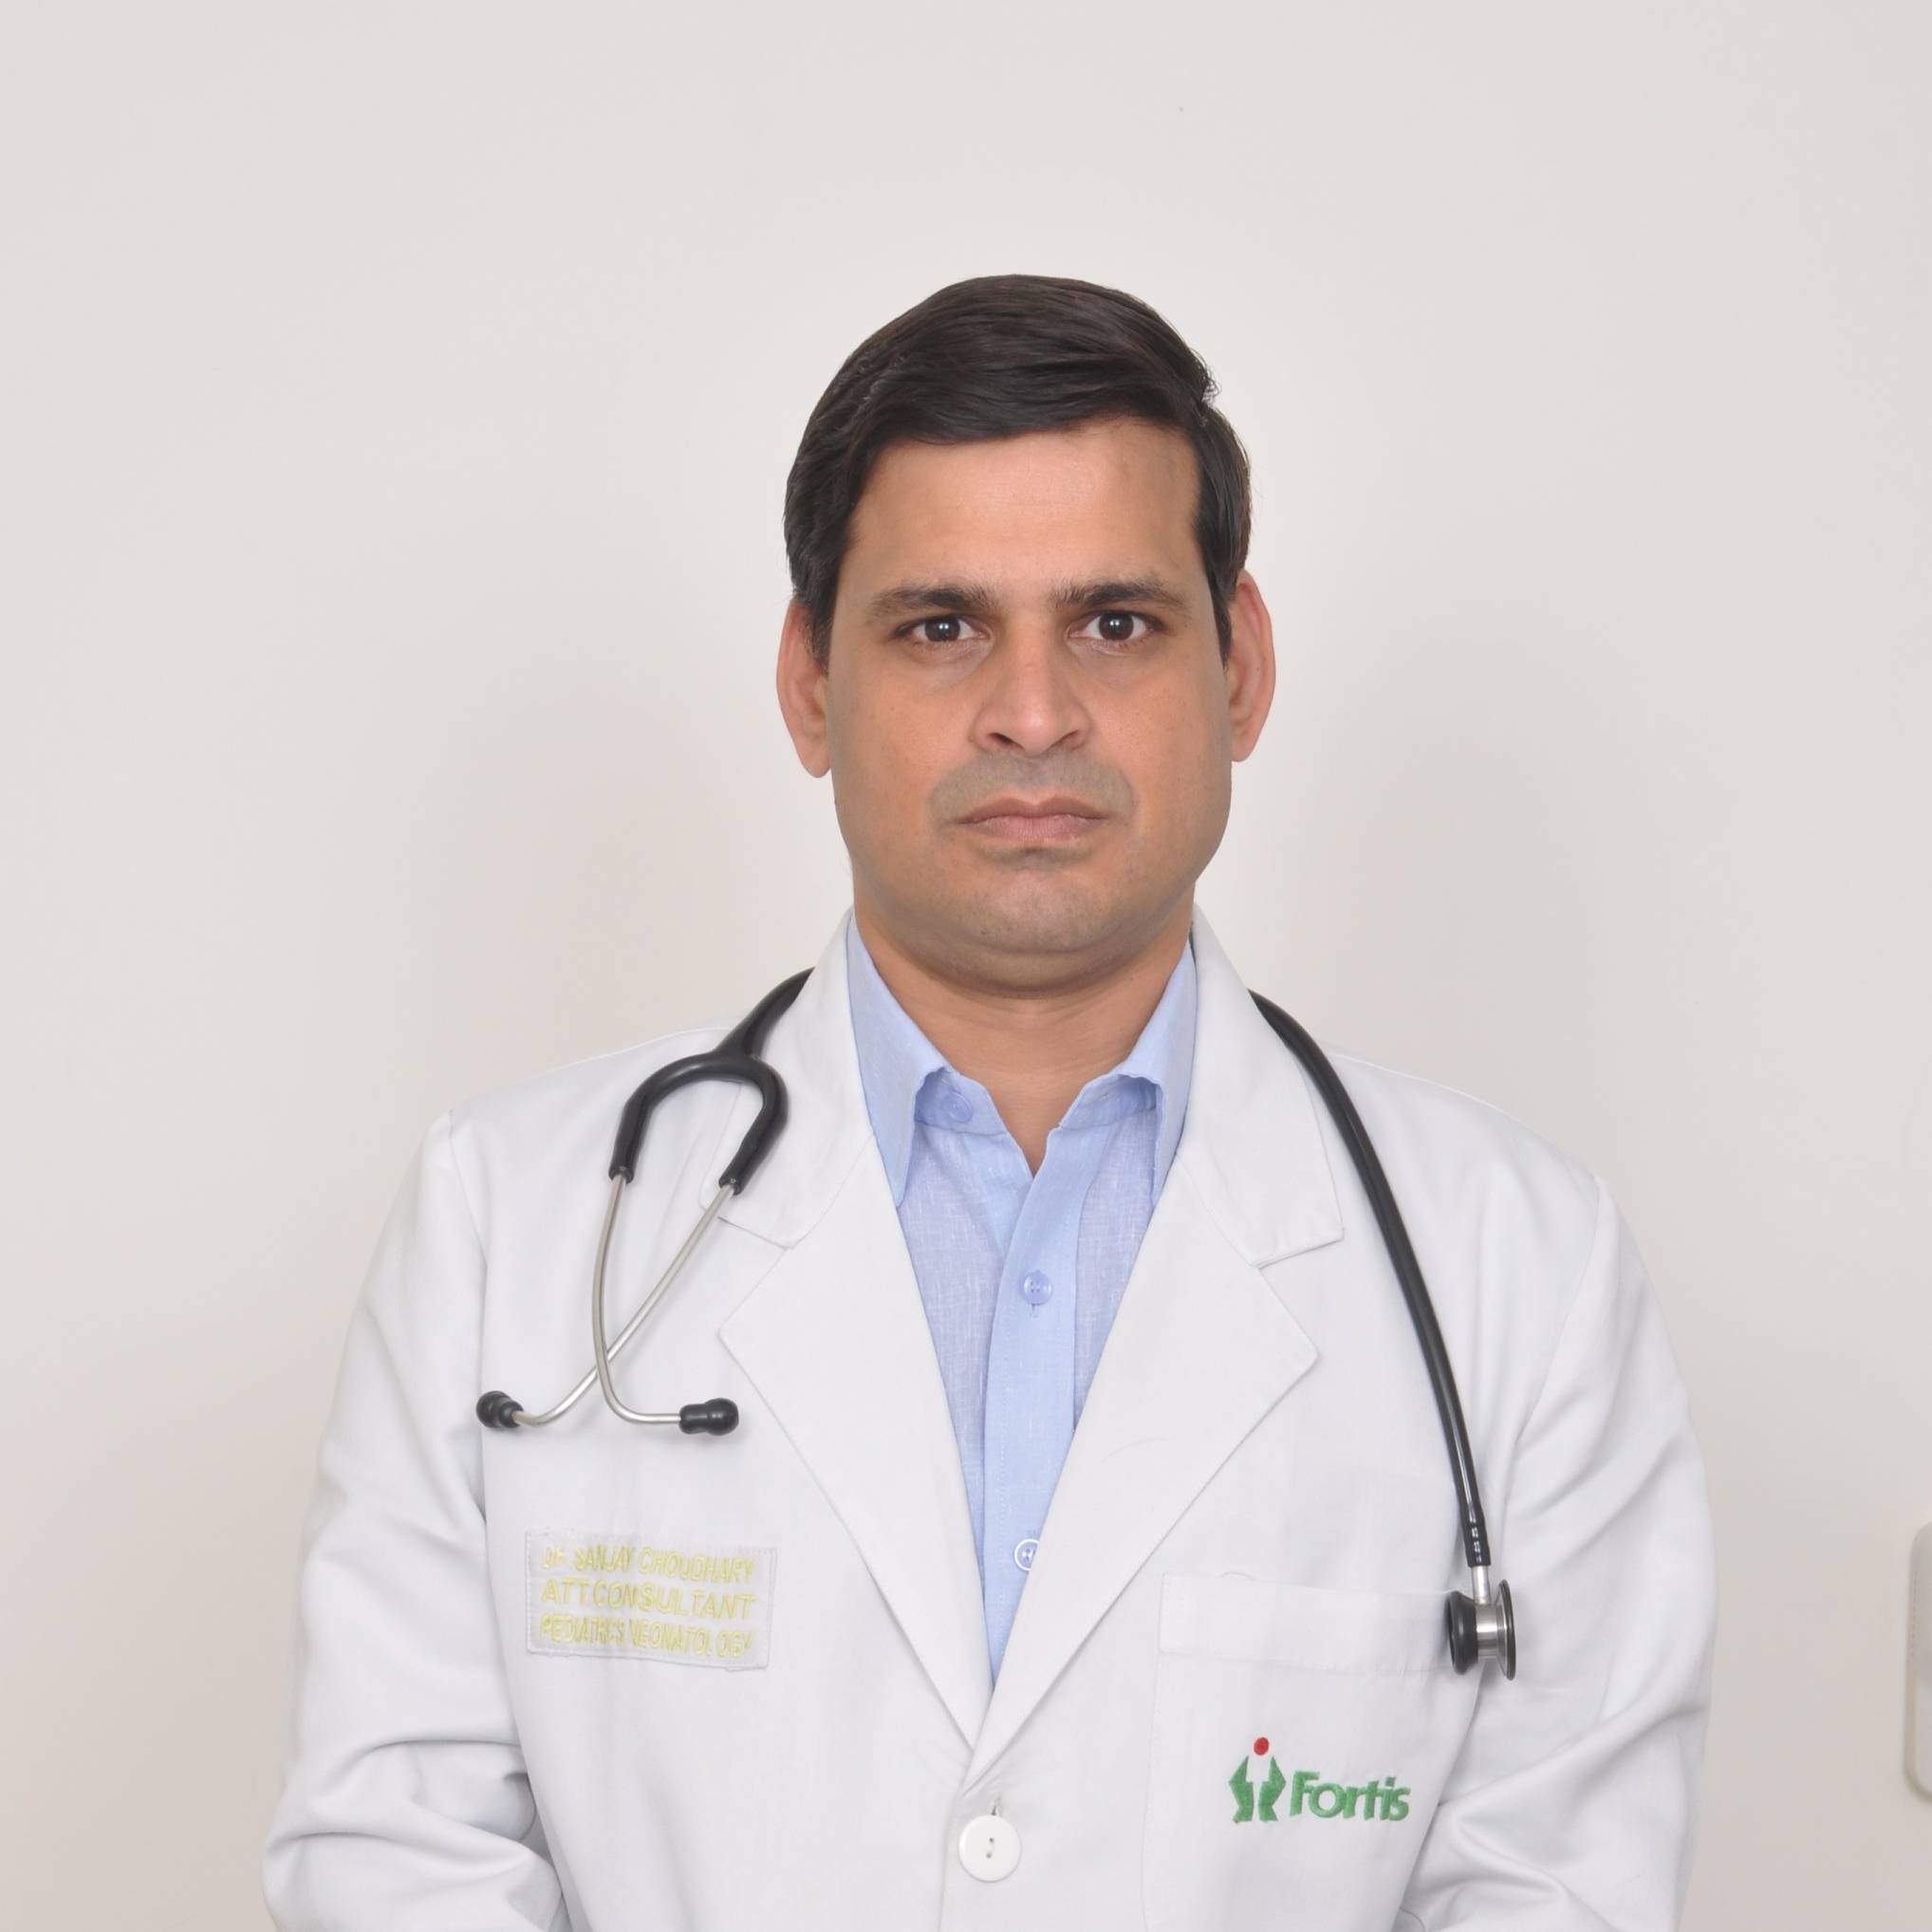 Dr. Sanjay Choudhary